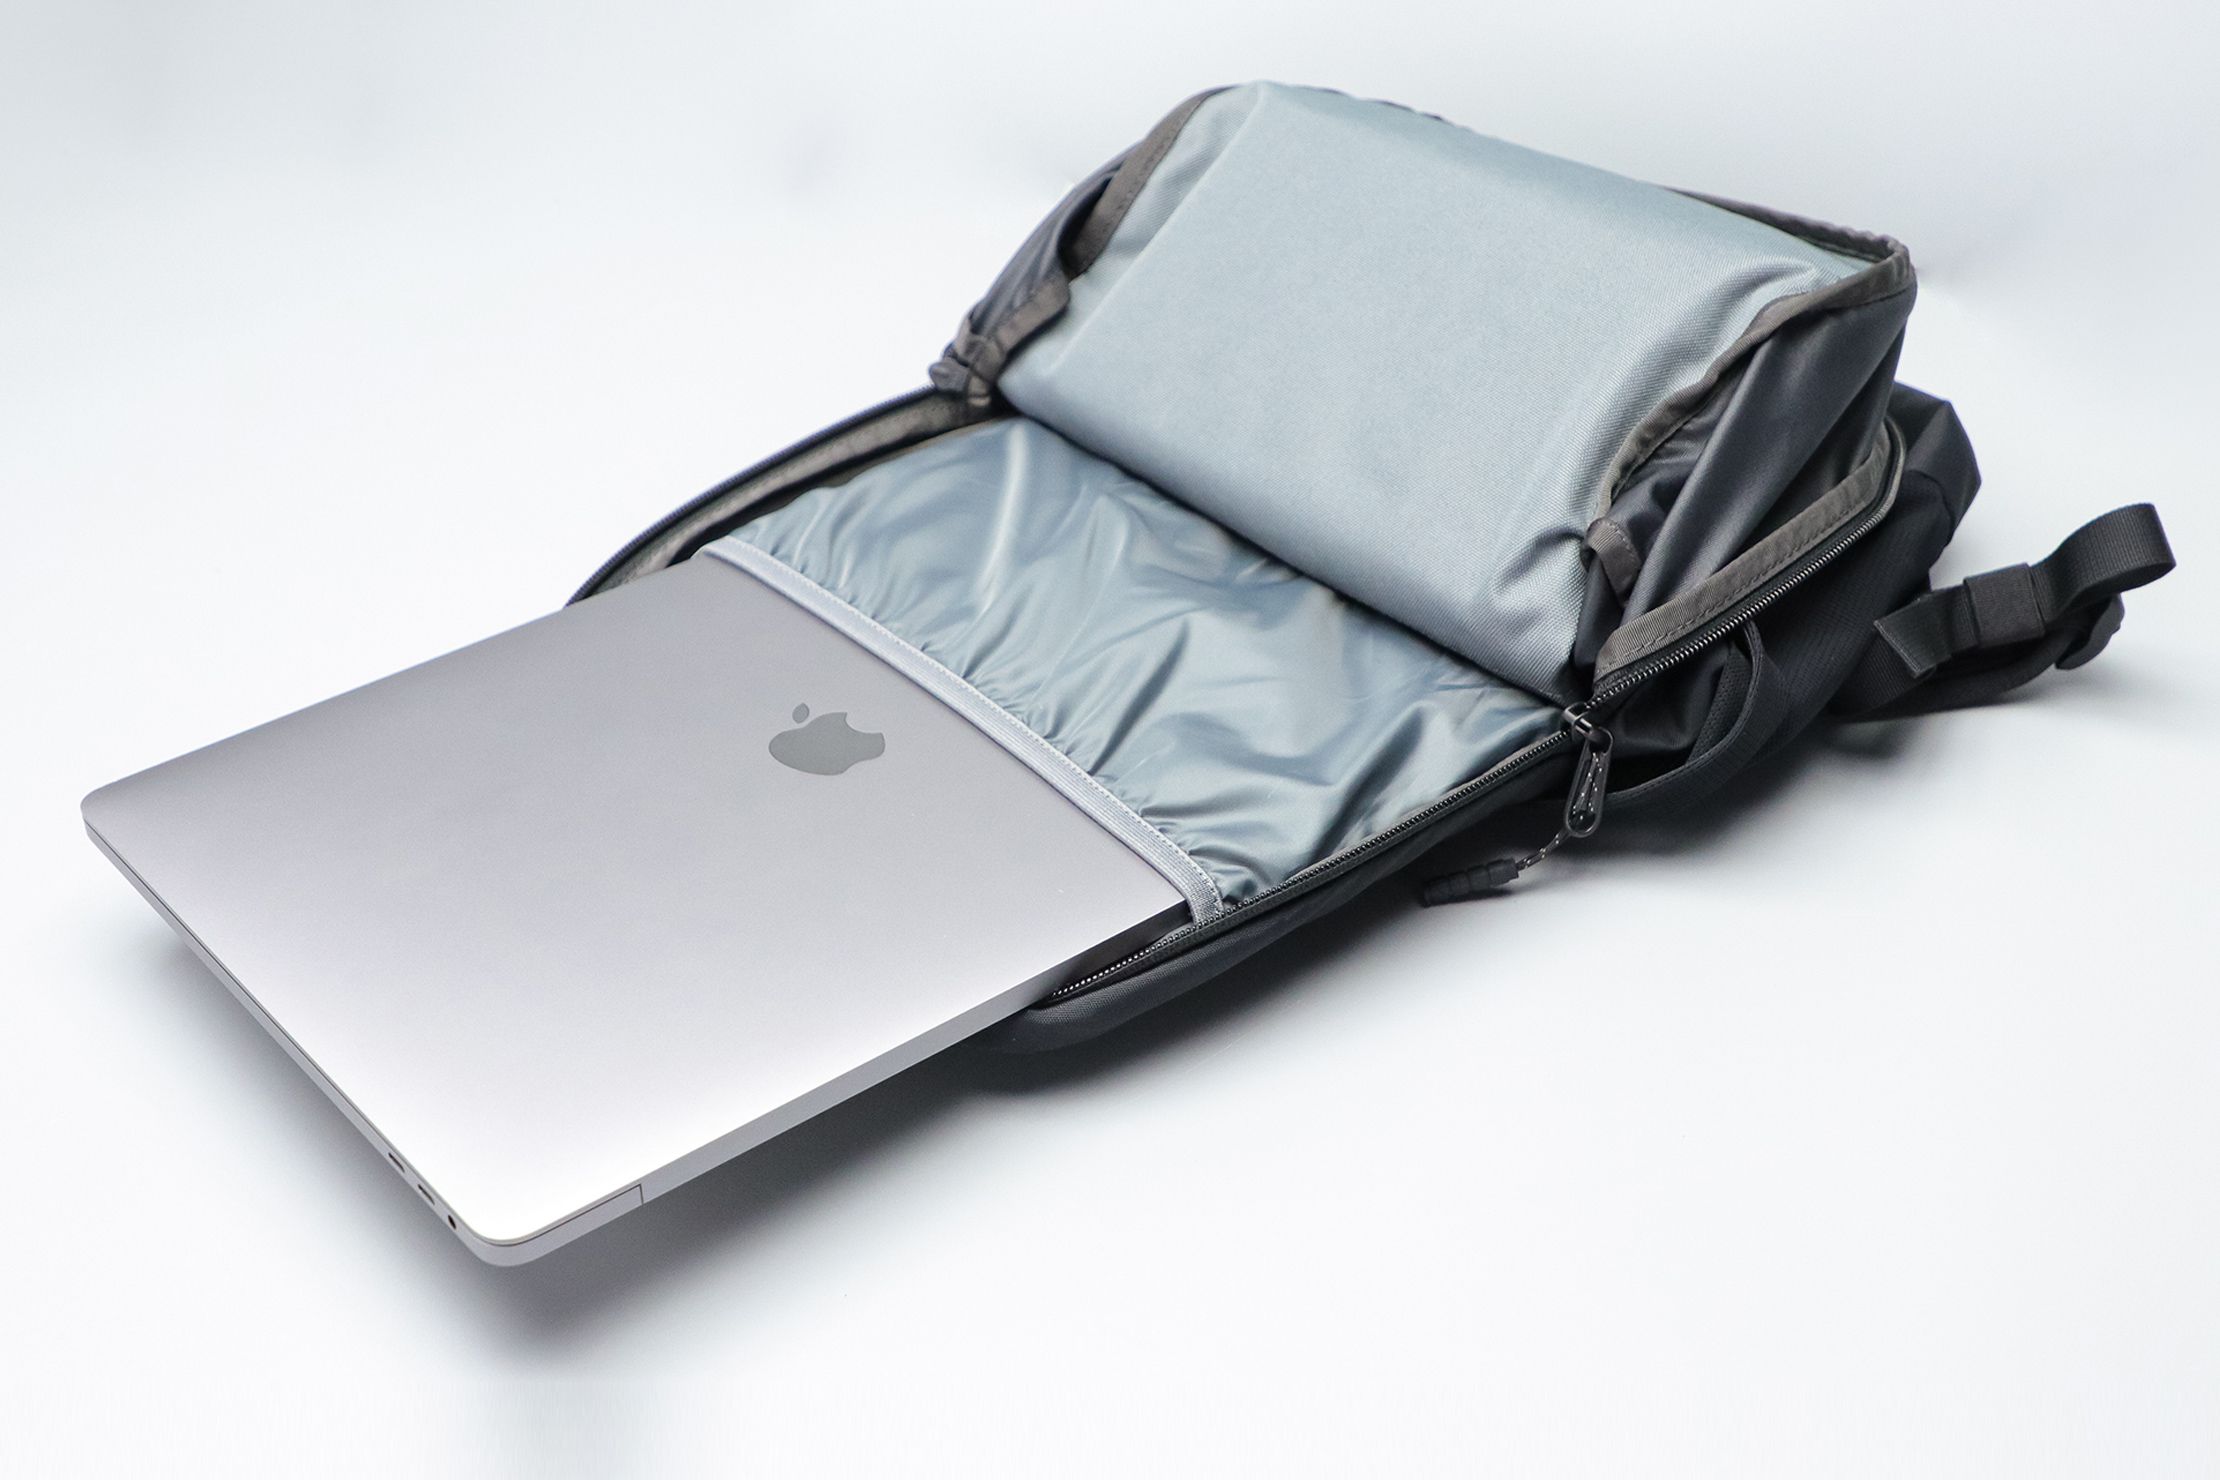 Timbuk2 Parkside Laptop Backpack 2.0 Designer – PerkUp Swag